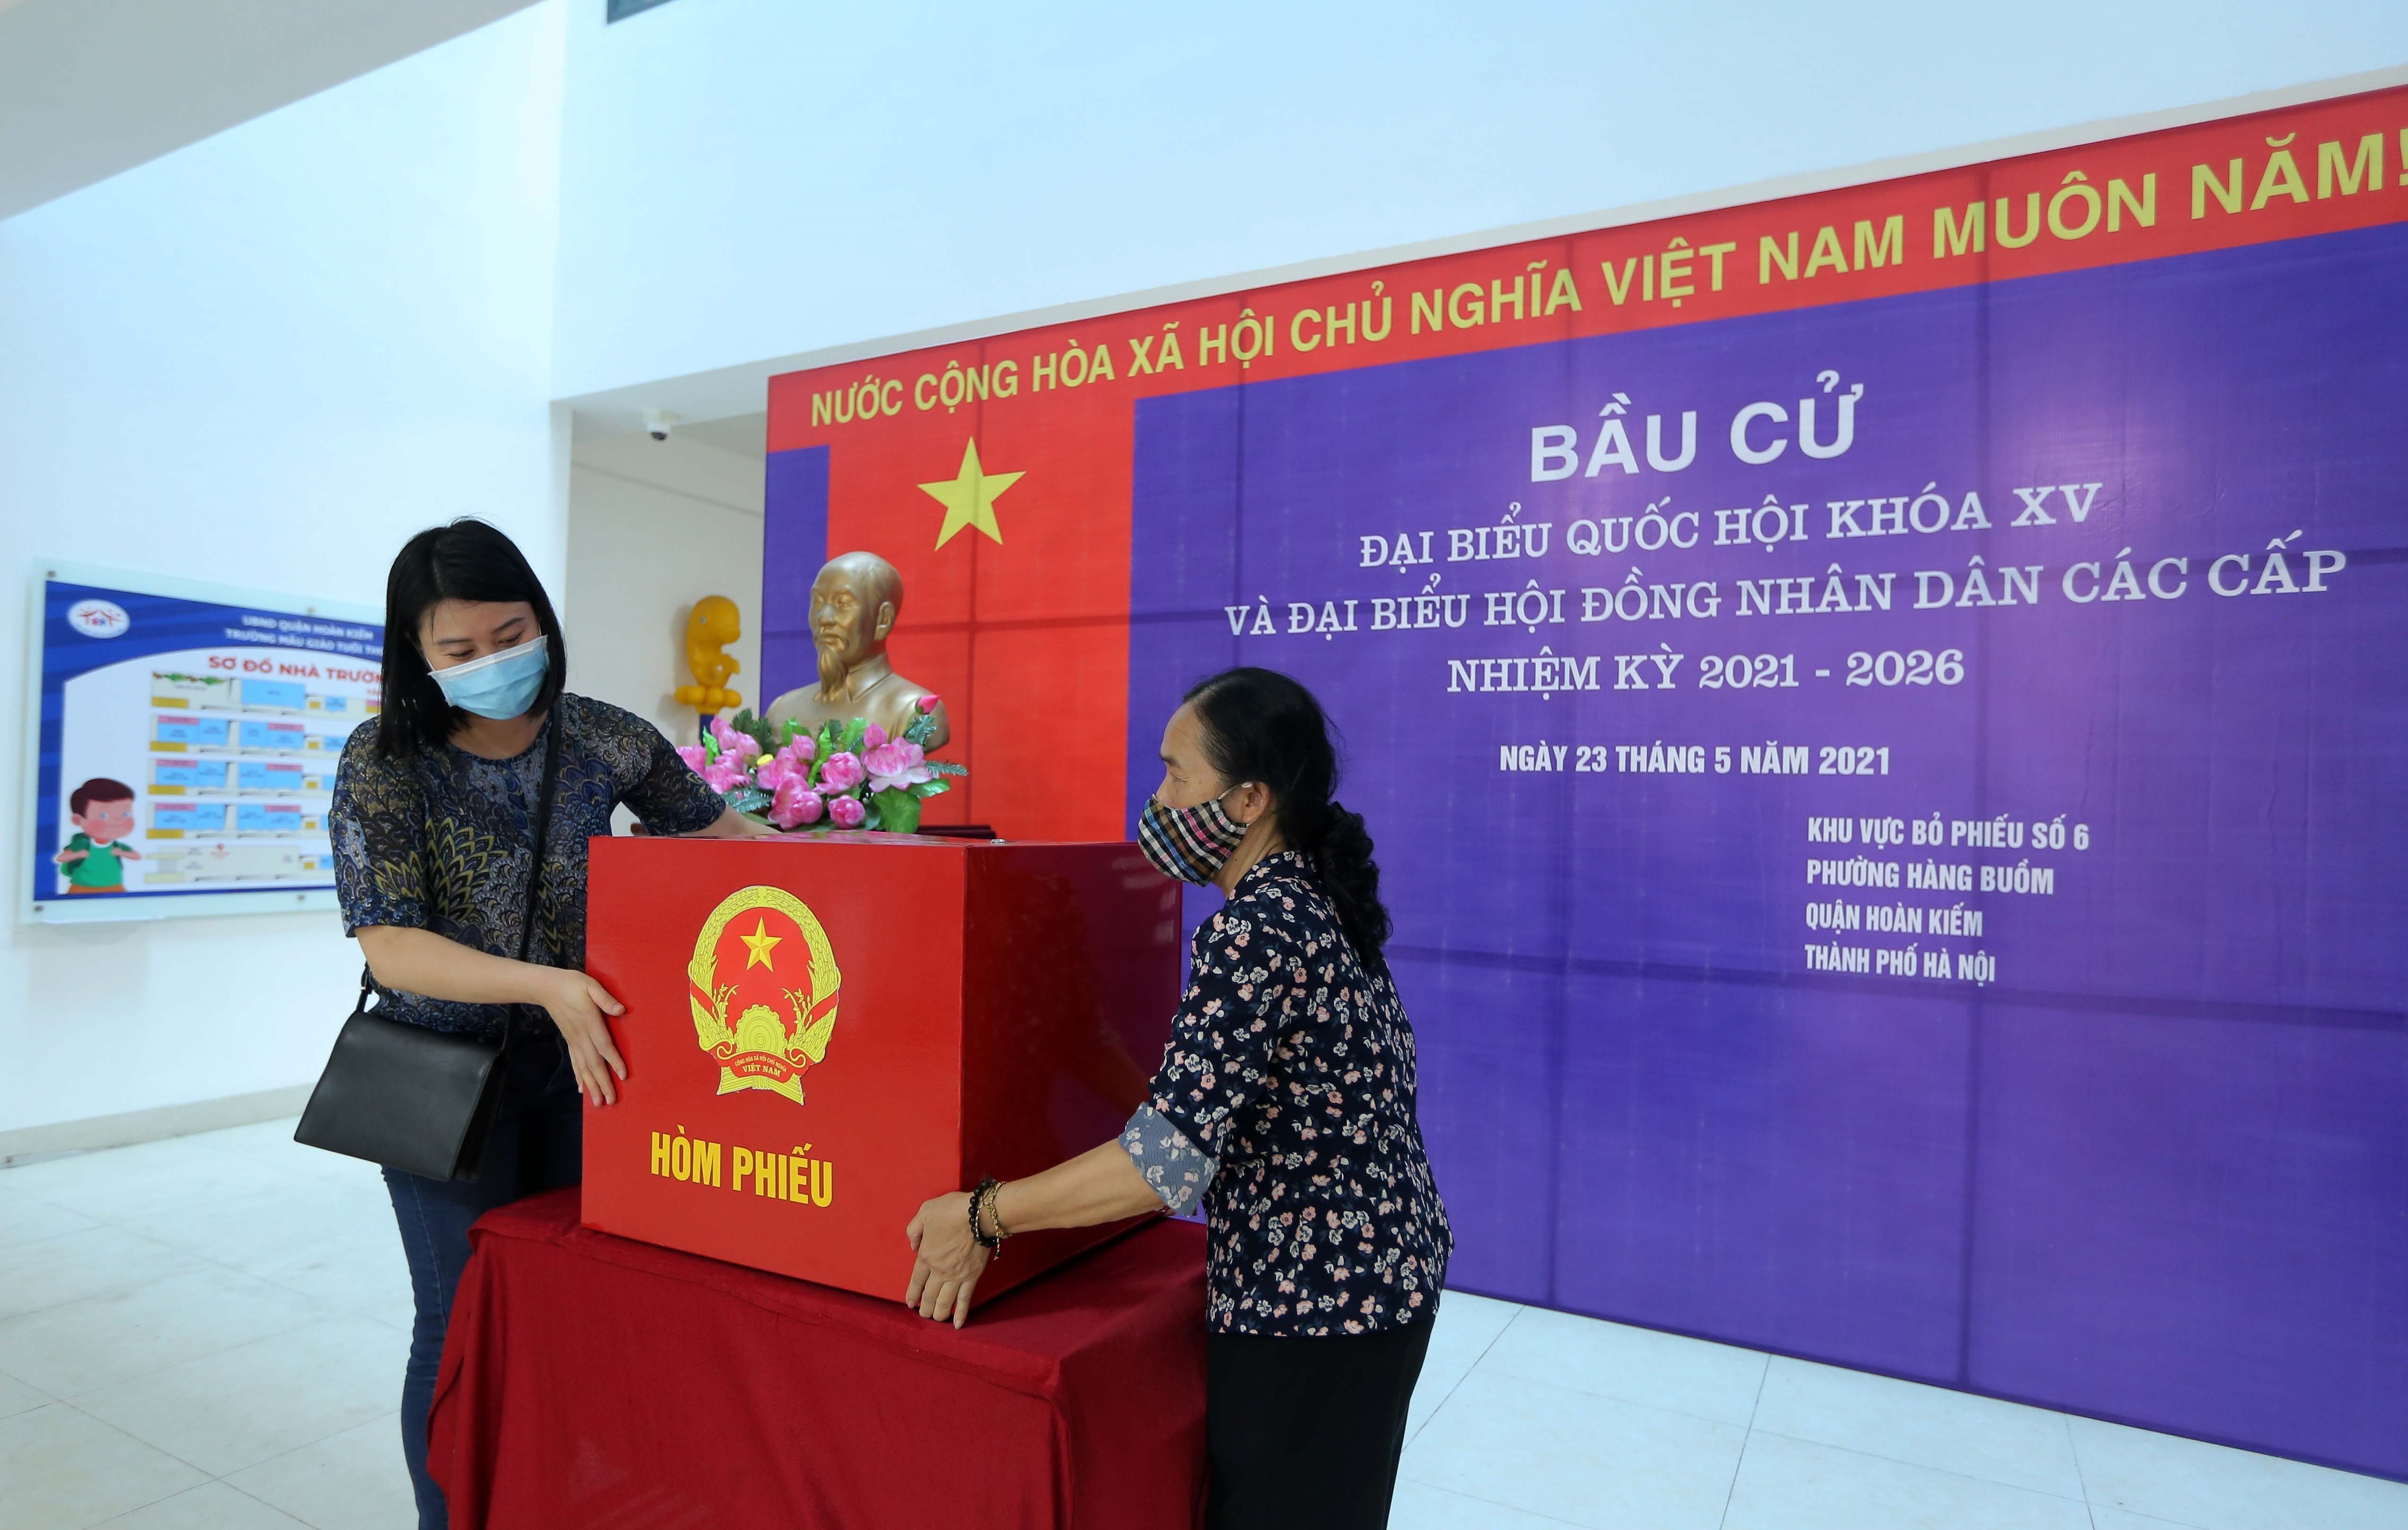 中国驻越大使高度评价越南选举筹备工作 hinh anh 2